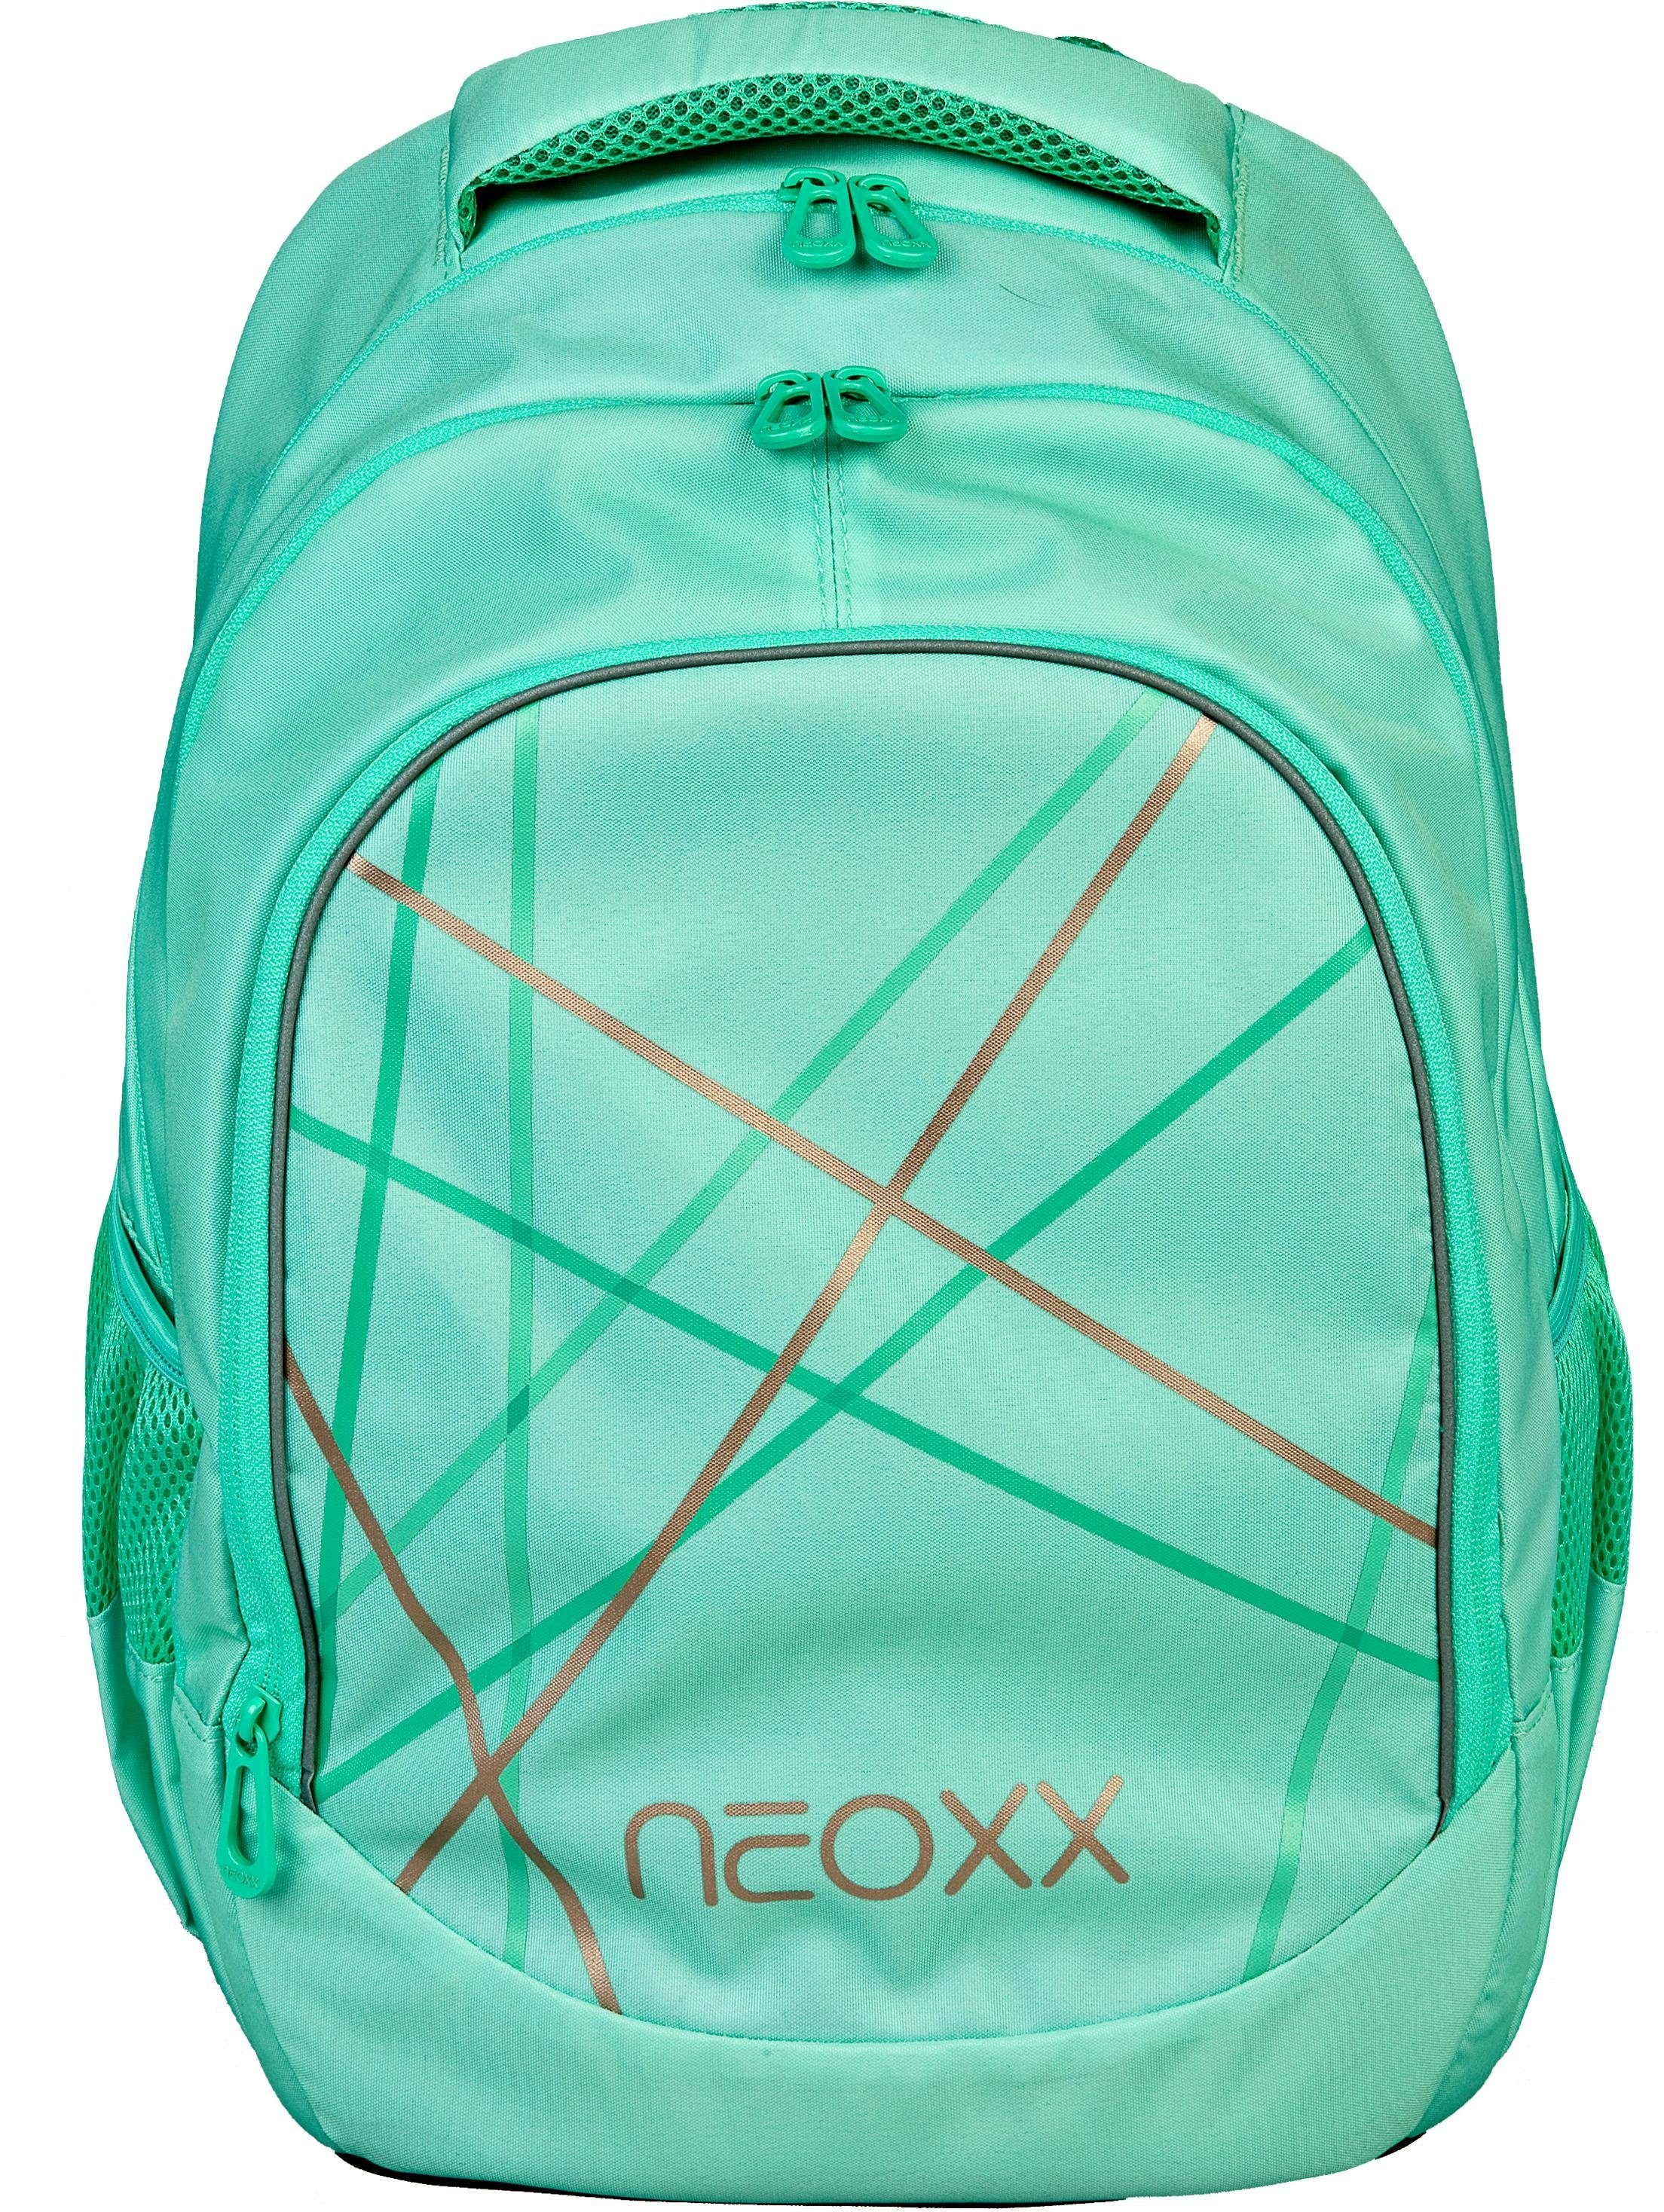 neoxx Schulrucksack »Fly, Mint to be«, Reflektionsnaht, aus recycelten PET-Flaschen